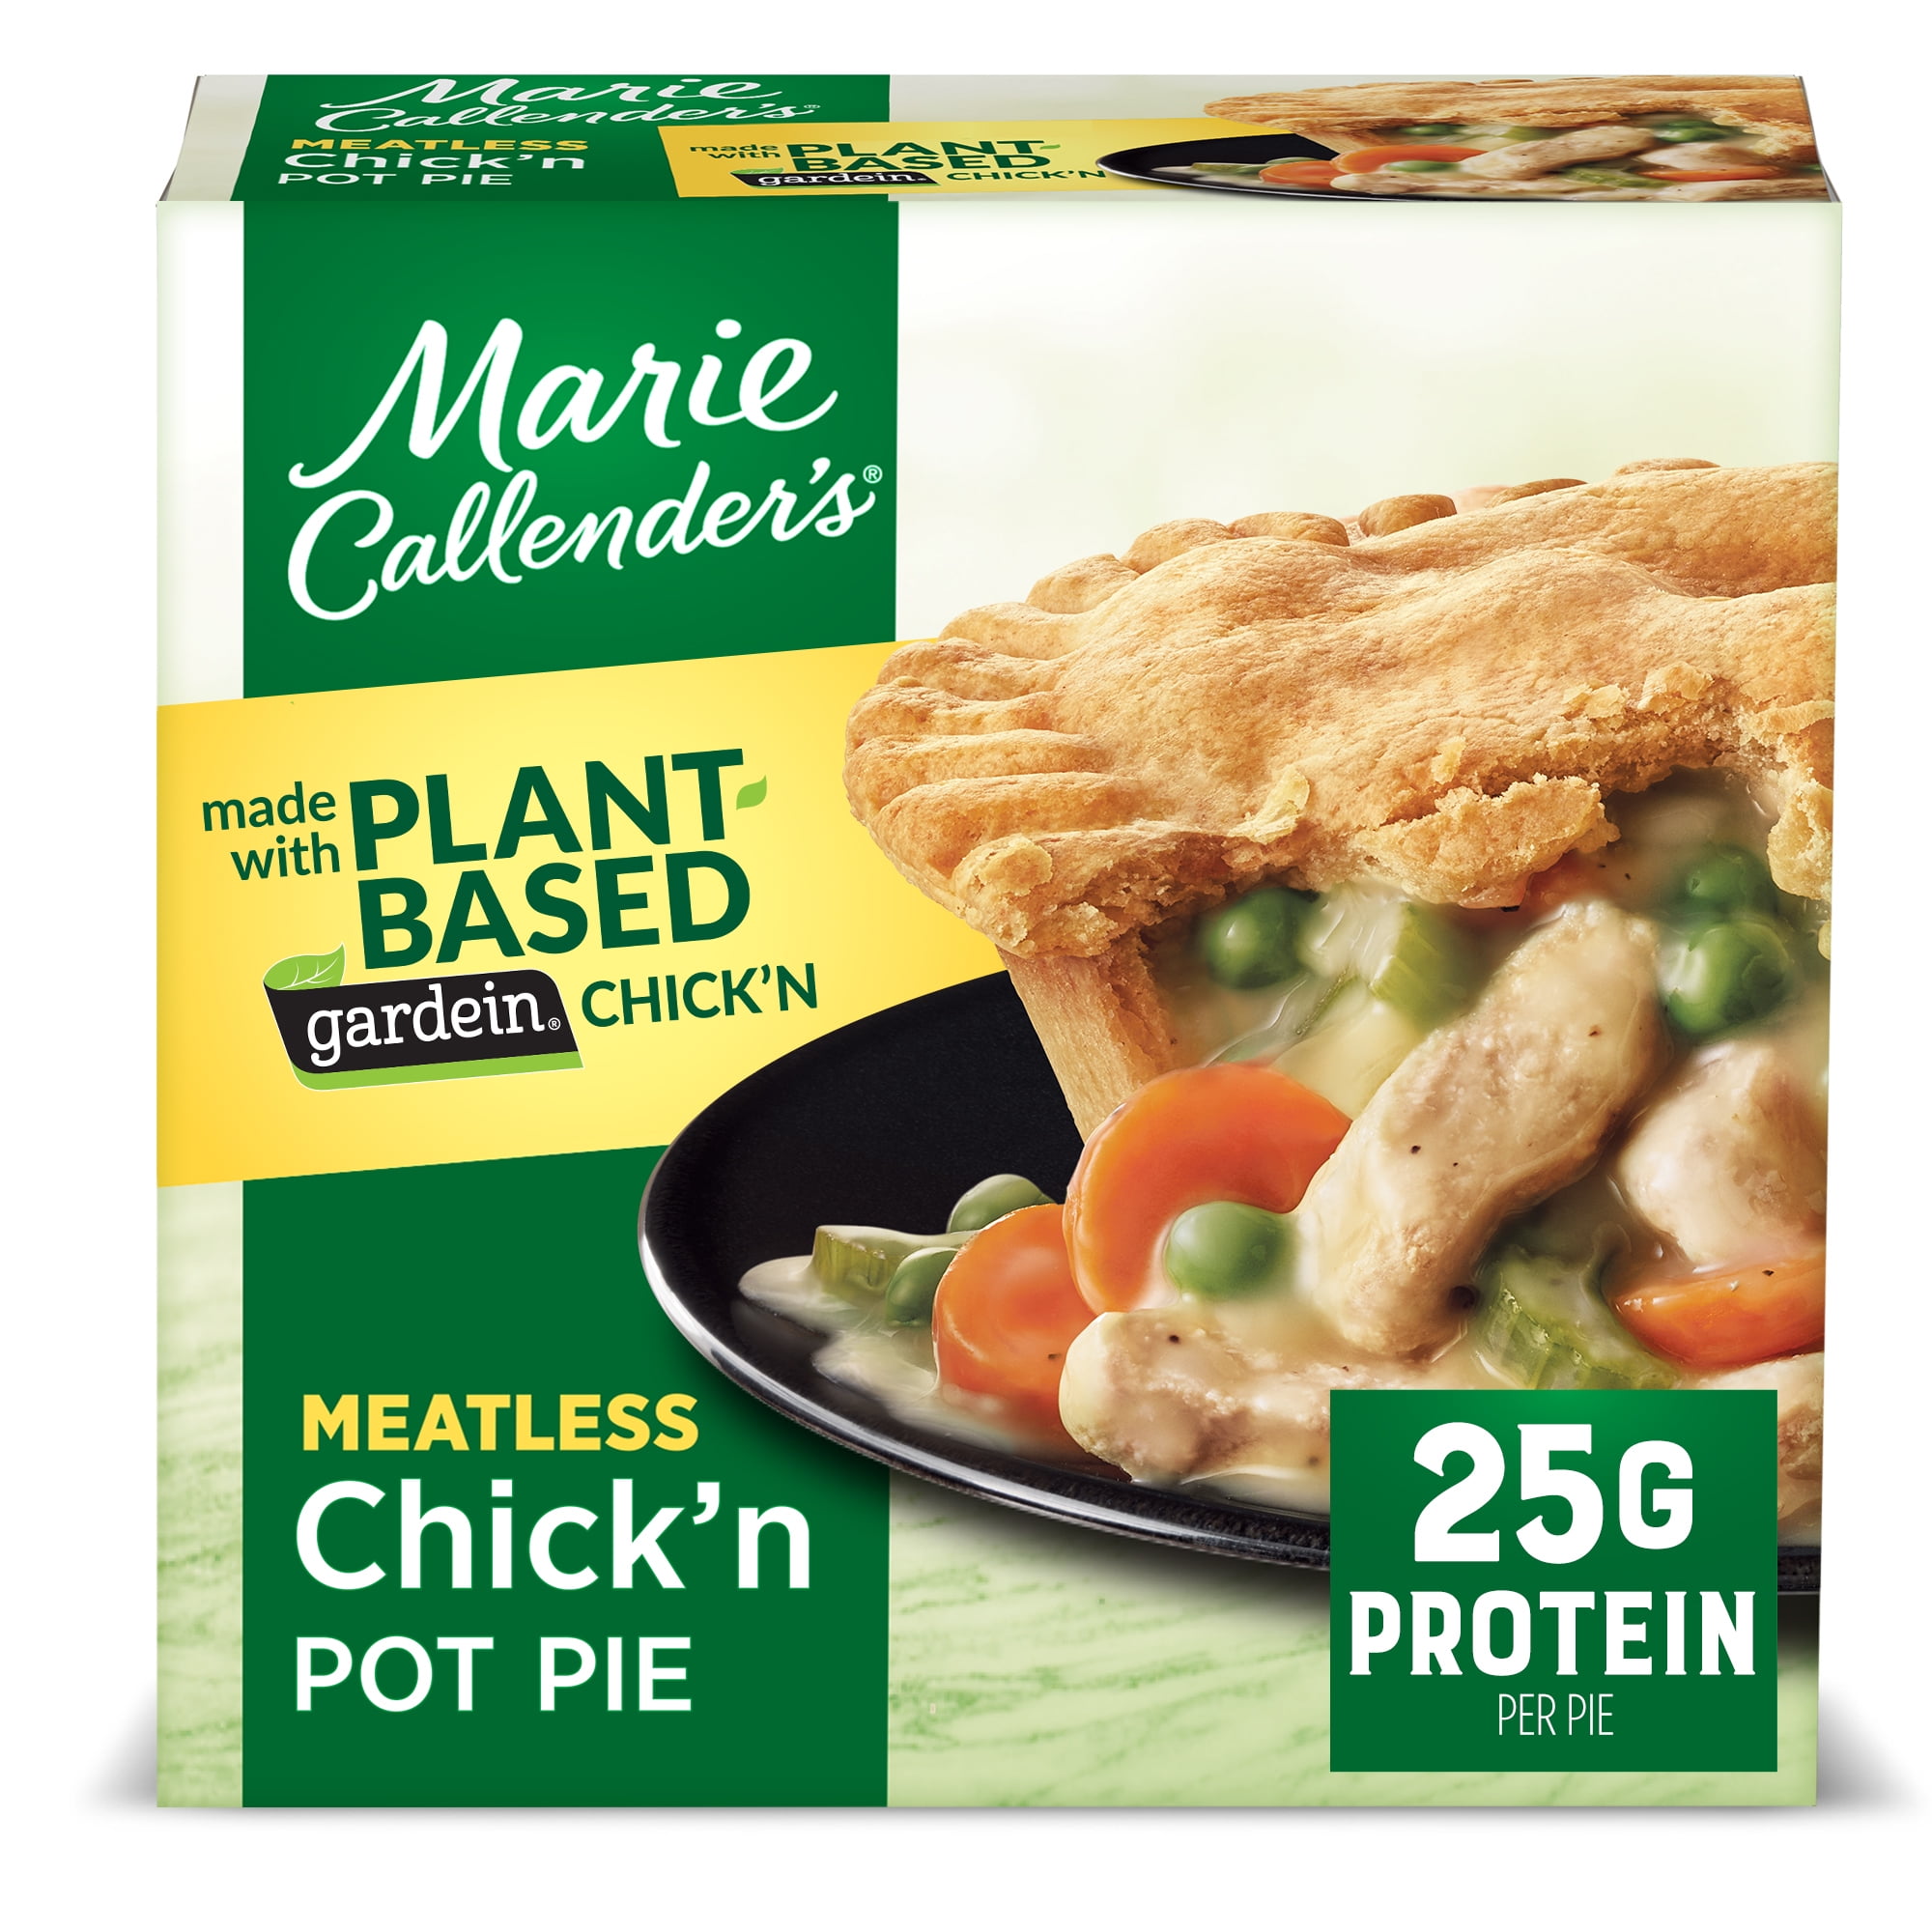 Marie Callender's Plant-Based, Gardein Chick'n Pot Pie, 15 oz (Frozen)